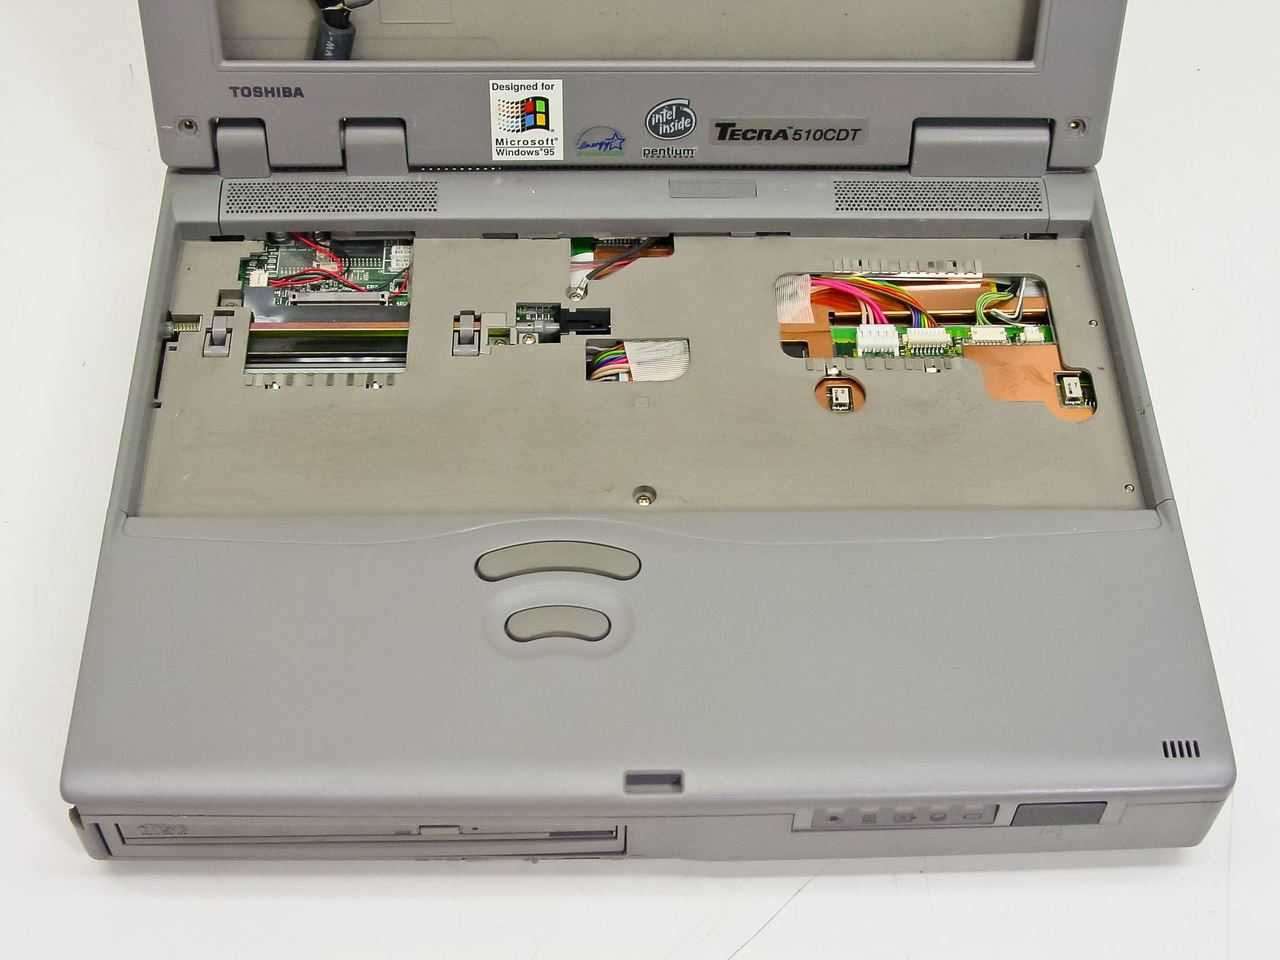 Toshiba PA1232U Tecra 510 CDT/2.1 Laptop - parts unit